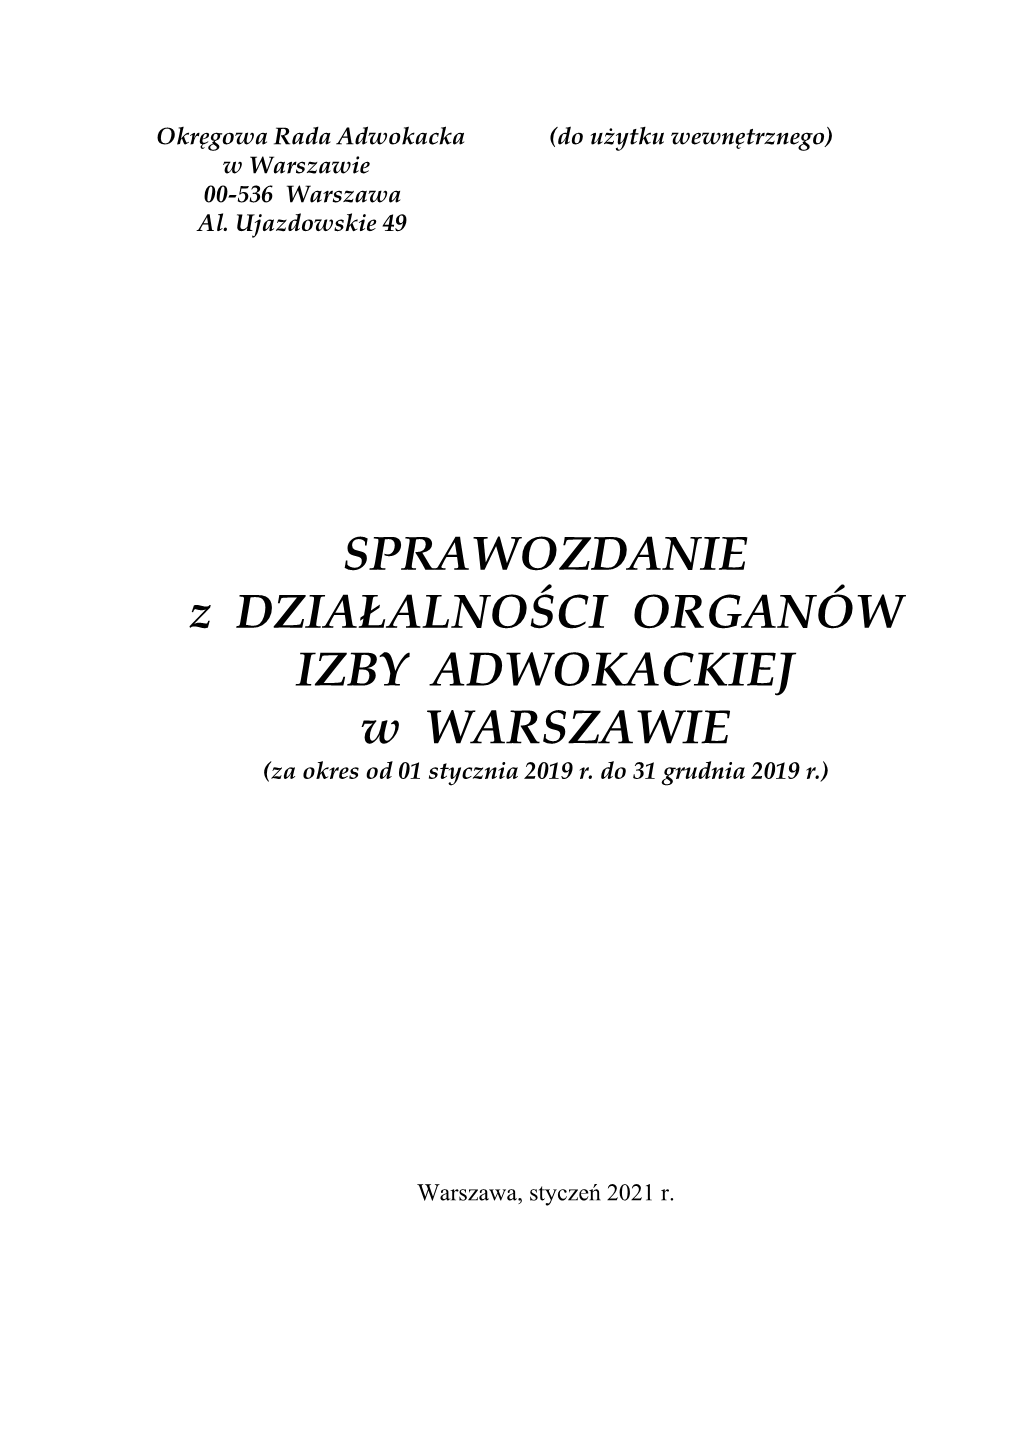 Sprawozdanie Z Działalności Organów Izby Adwokackiej W Warszawie W Roku 2018, − 29 Czerwca 2019 R